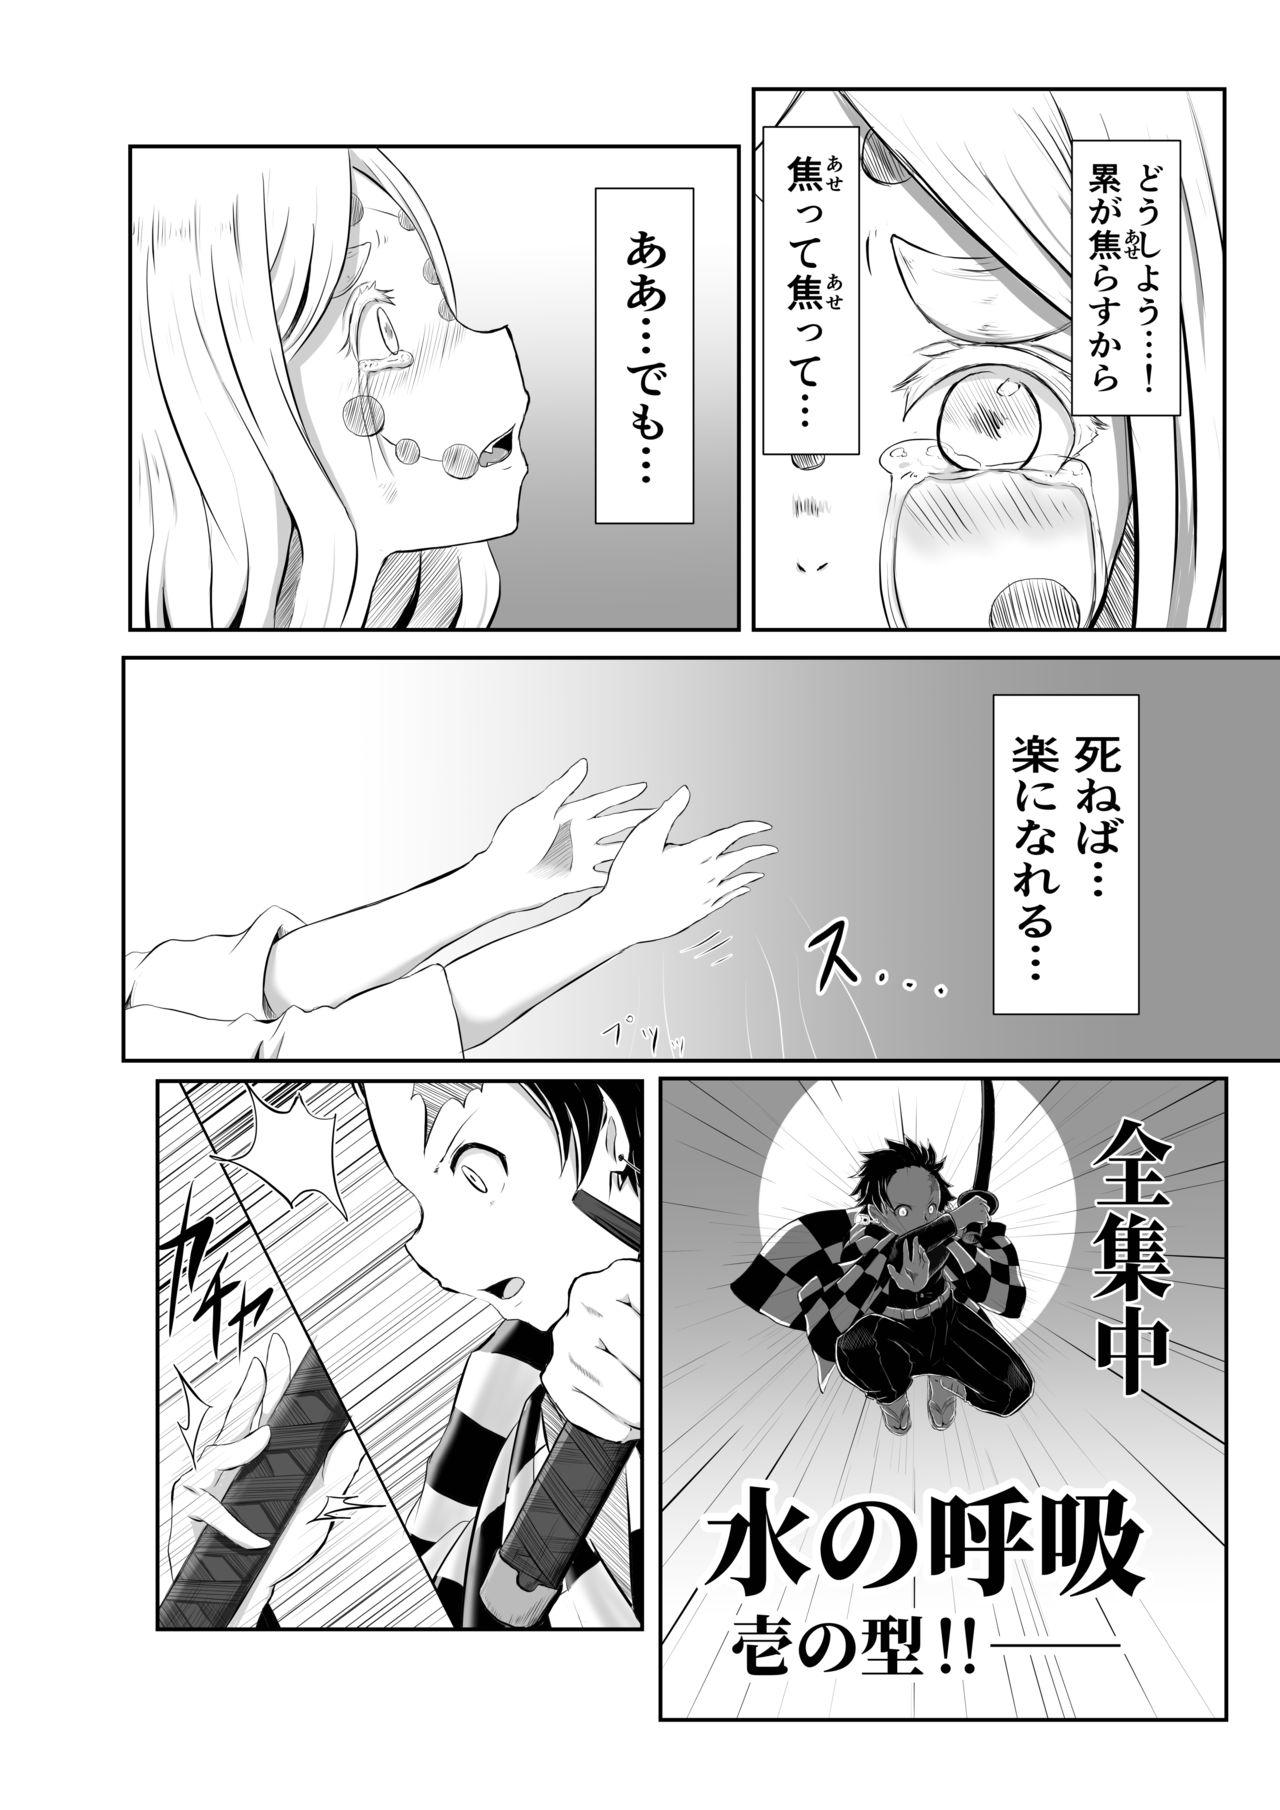 Farting Hinokami Sex. - Kimetsu no yaiba | demon slayer Flogging - Page 2